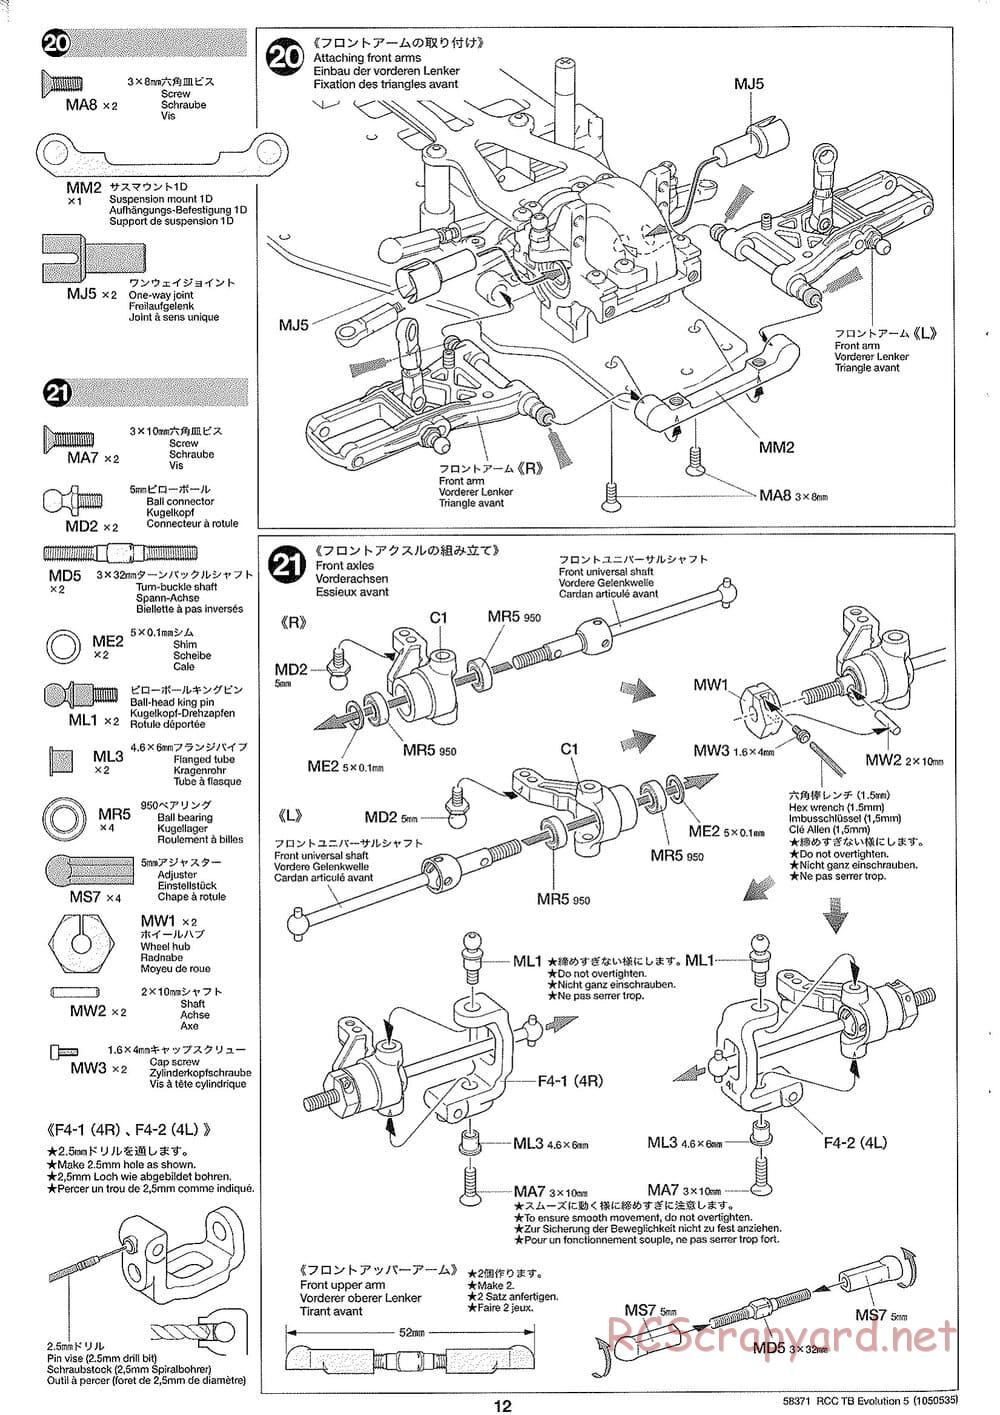 Tamiya - TB Evolution V Chassis - Manual - Page 12